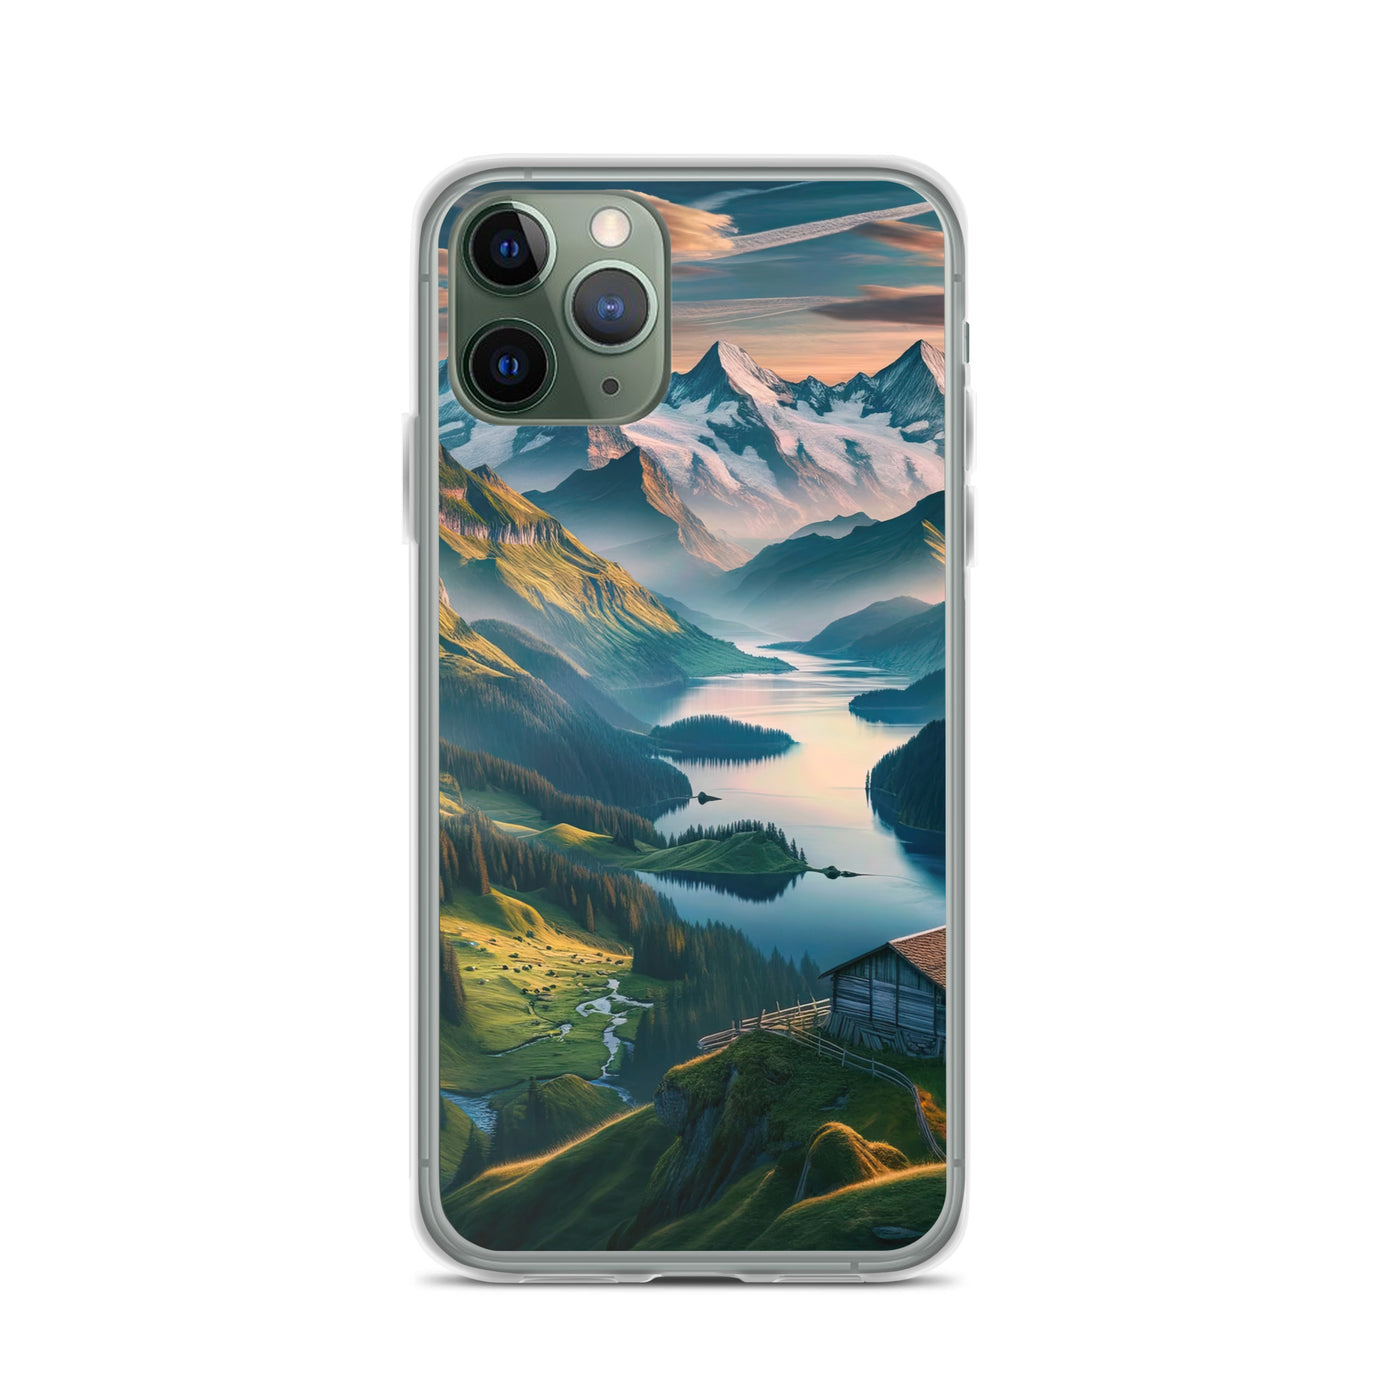 Schweizer Flagge, Alpenidylle: Dämmerlicht, epische Berge und stille Gewässer - iPhone Schutzhülle (durchsichtig) berge xxx yyy zzz iPhone 11 Pro